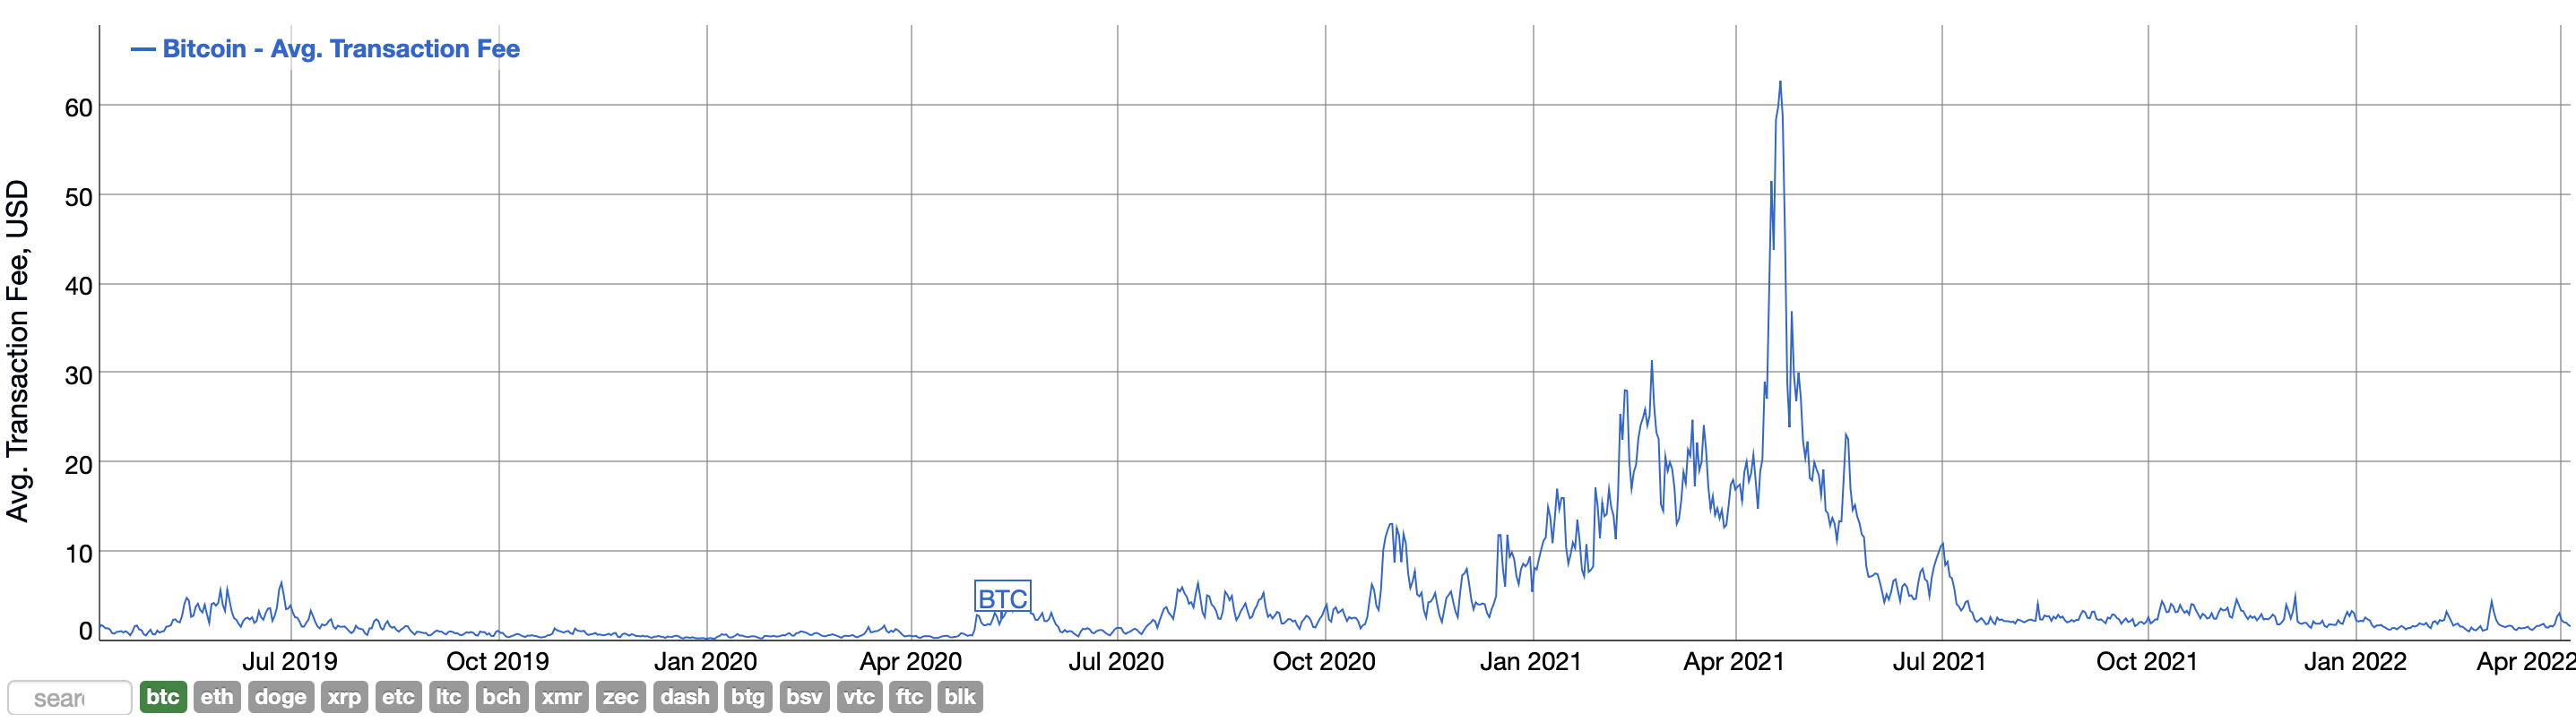 Средняя комиссия за переводы Биткоина опустилась до минимума с 2011 года в BTC. Что это значит? График комиссий в сети Биткоина в долларовом выражении. Фото.